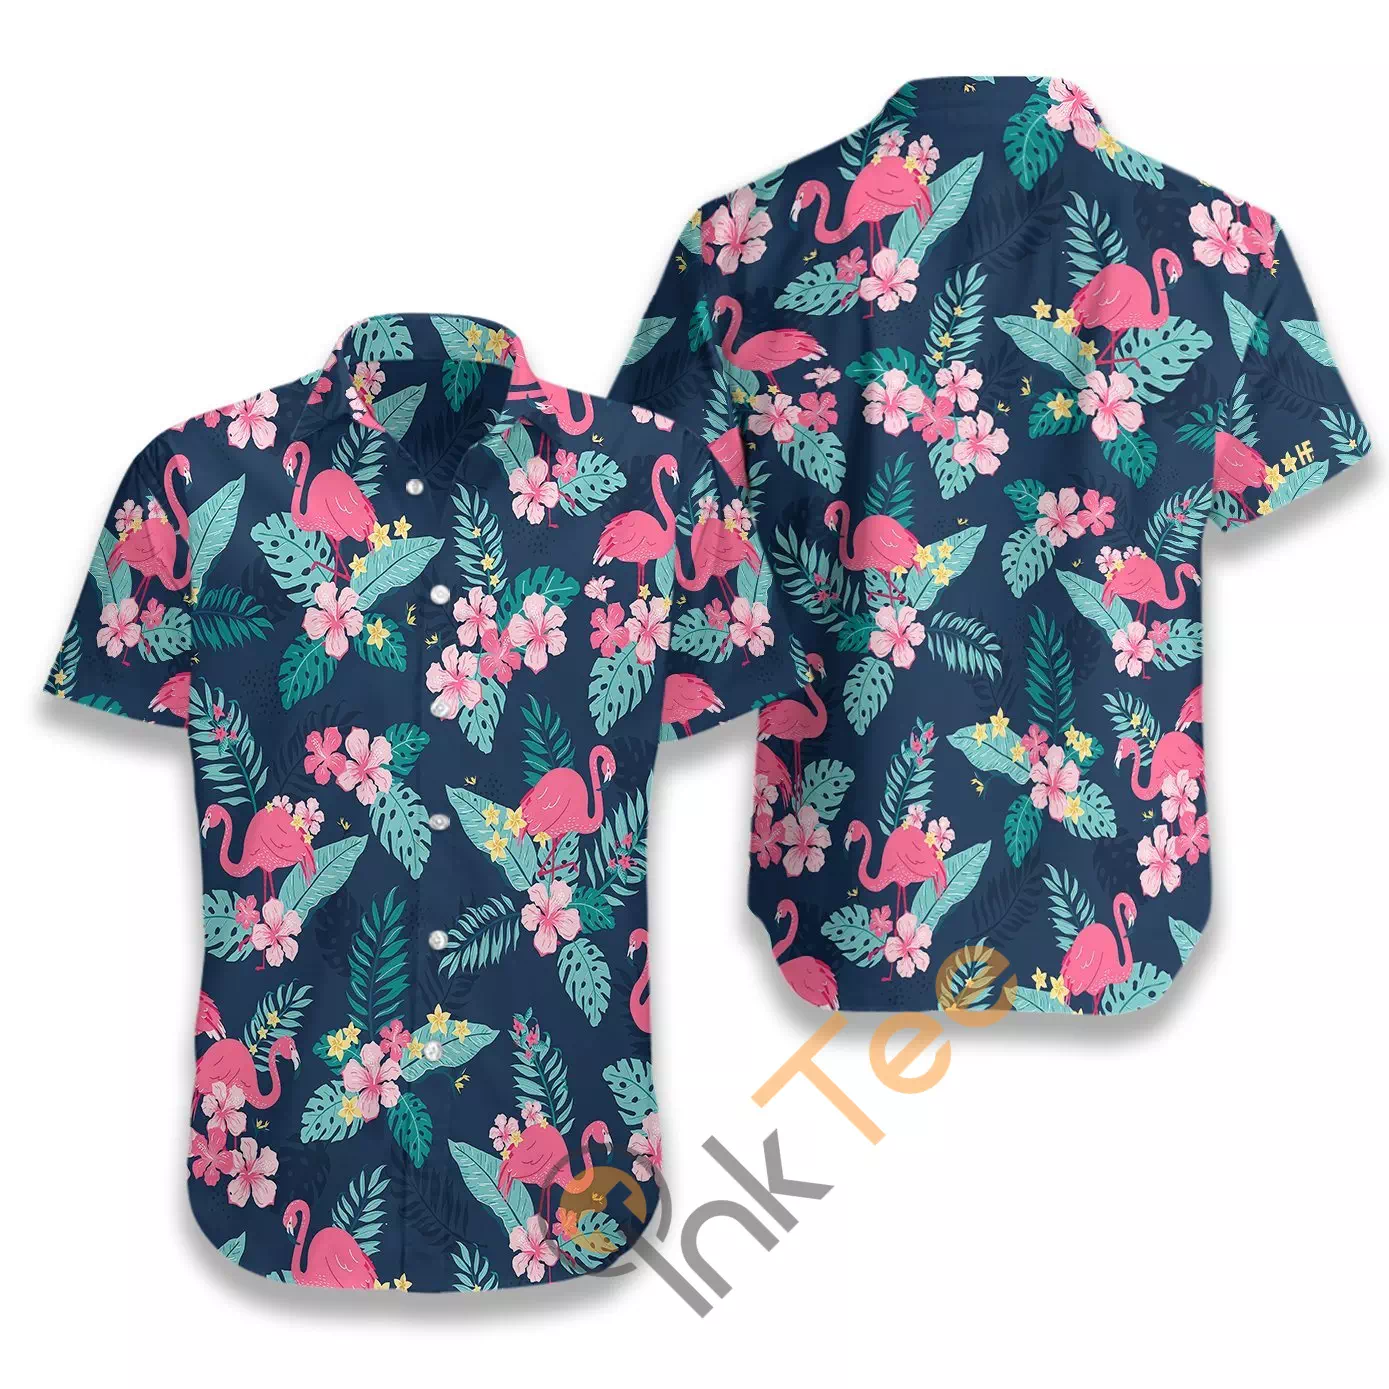 Tropical Flamingo 02 N489 Hawaiian shirts